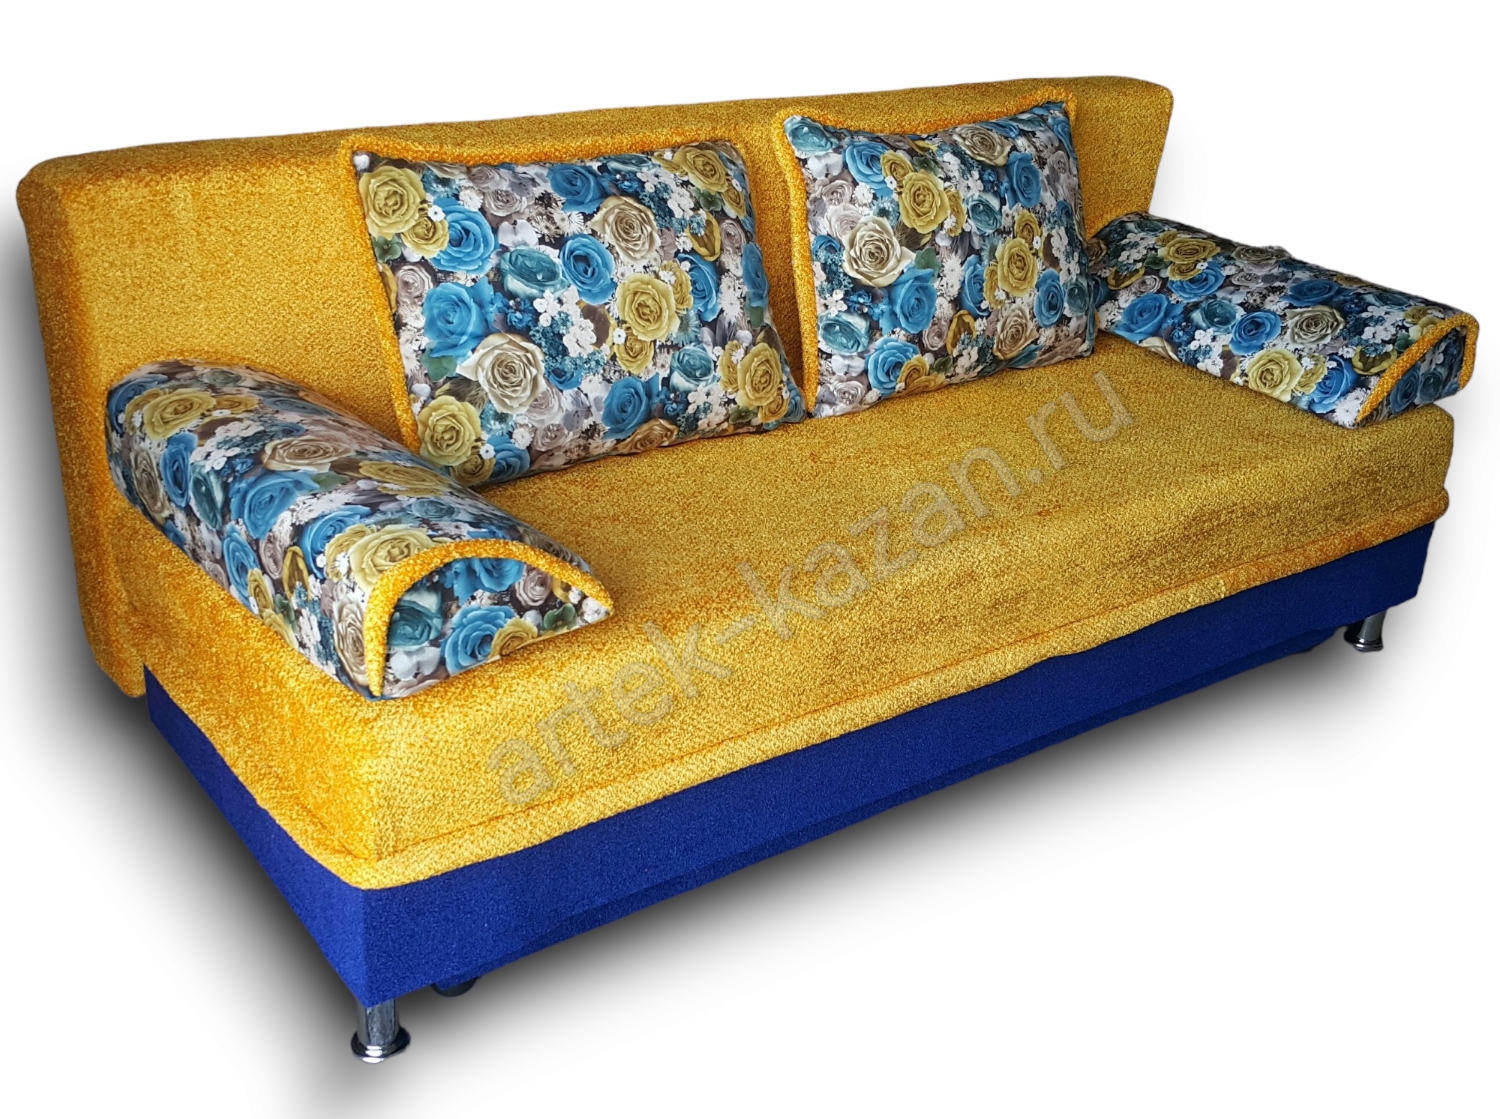 диван еврокнижка Эконом фото № 17. Купить недорогой диван по низкой цене от производителя можно у нас.